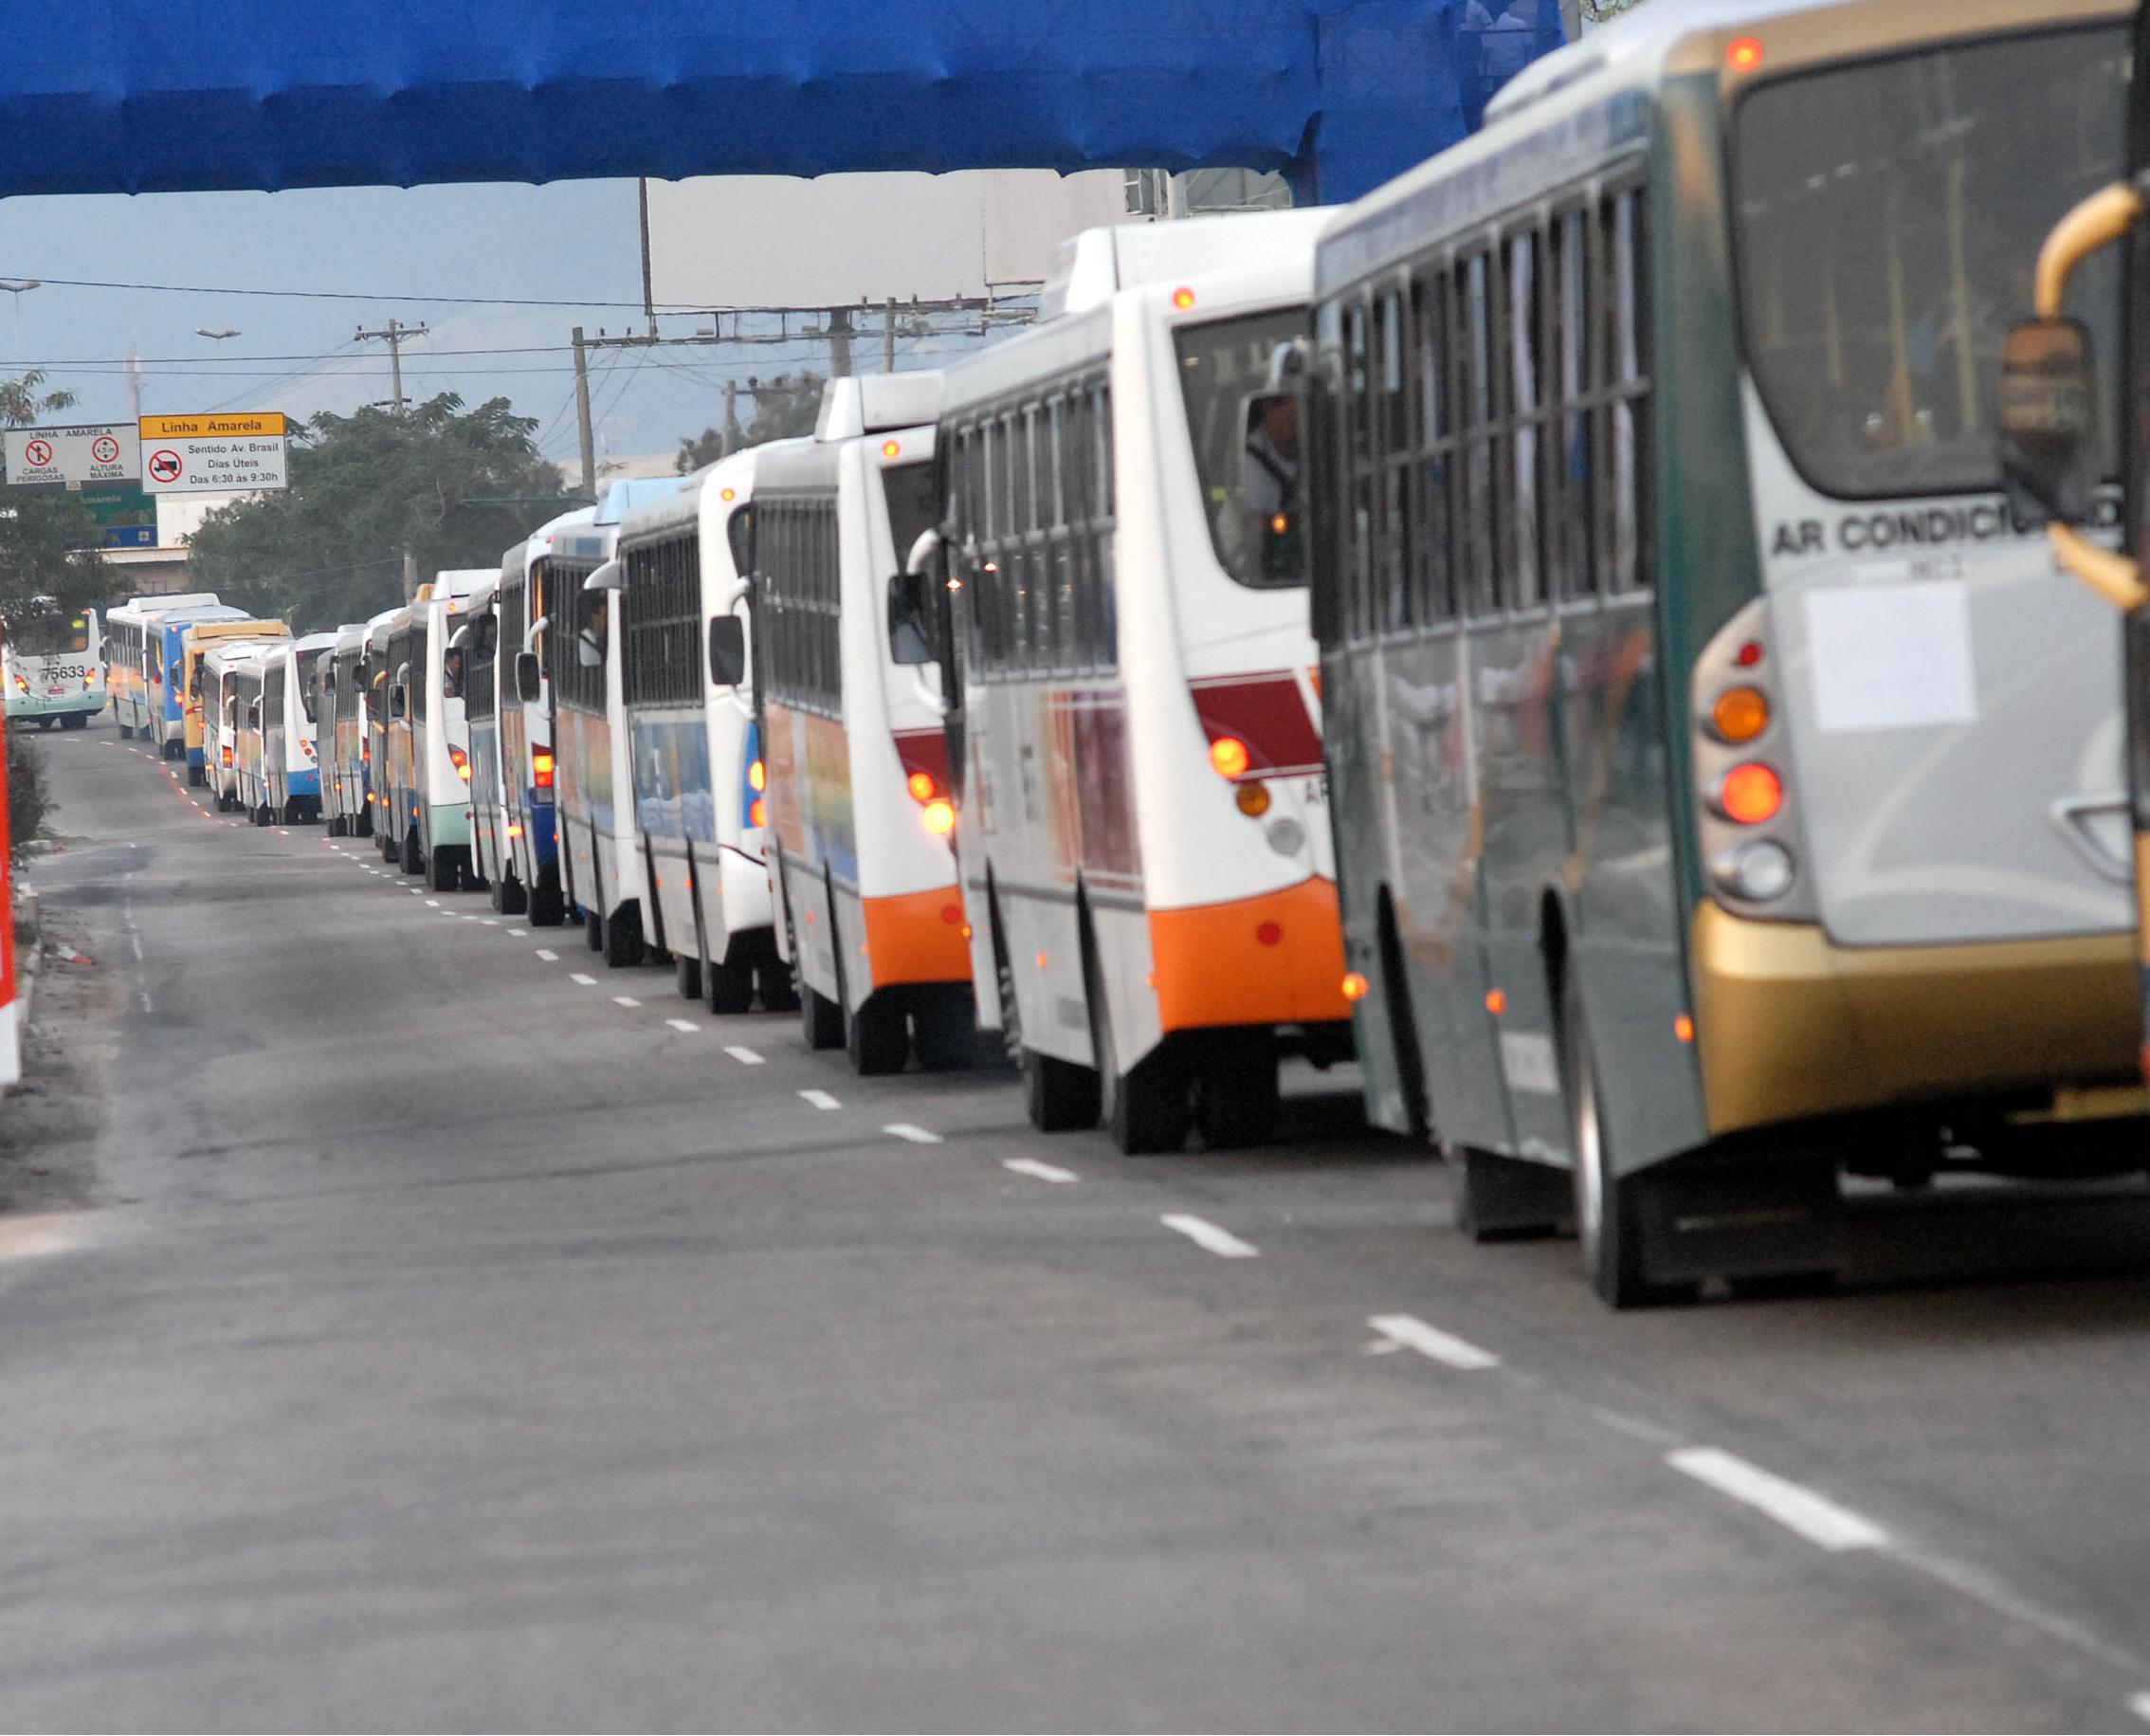 DECISÃO: Mantida multa à proprietária de ônibus em comboio impedindo fiscalização aduaneira